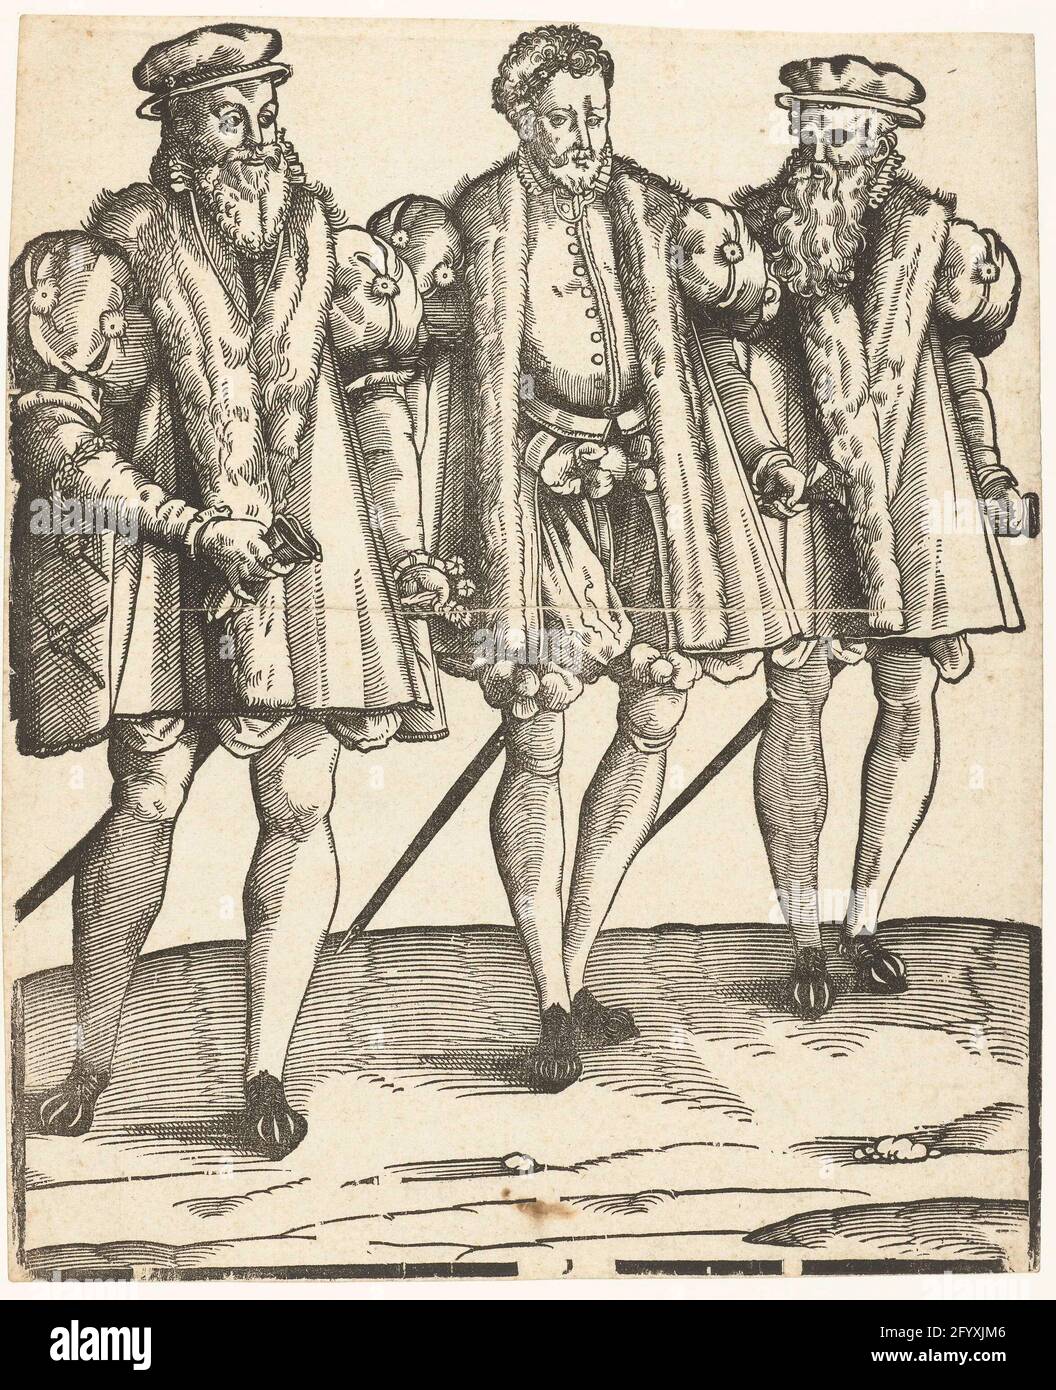 Portrait de gaspard, François et Odet de Coligny. Odet, Cardinal de Châtillon (1517-1571), Gaspard, amiral de France et père de Louise de Coligny (1519-1572) et François, général der infanterie (1521-1569) sont habillés selon la mode espagnole. Banque D'Images